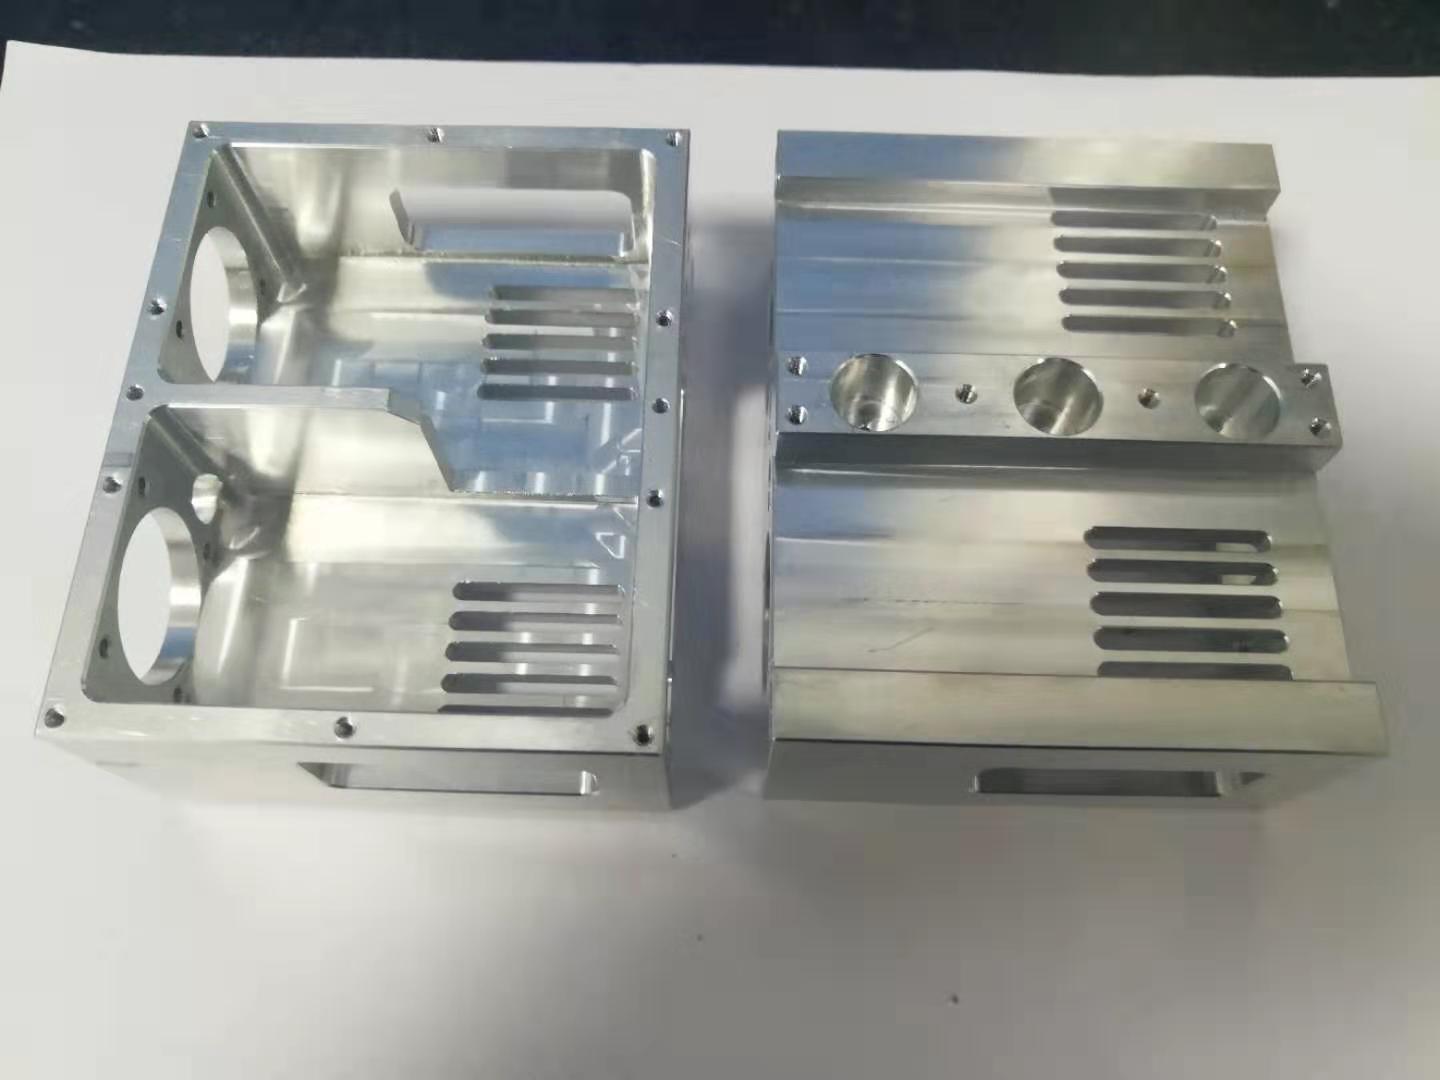 CNC milling Aluminum enclosure for computer